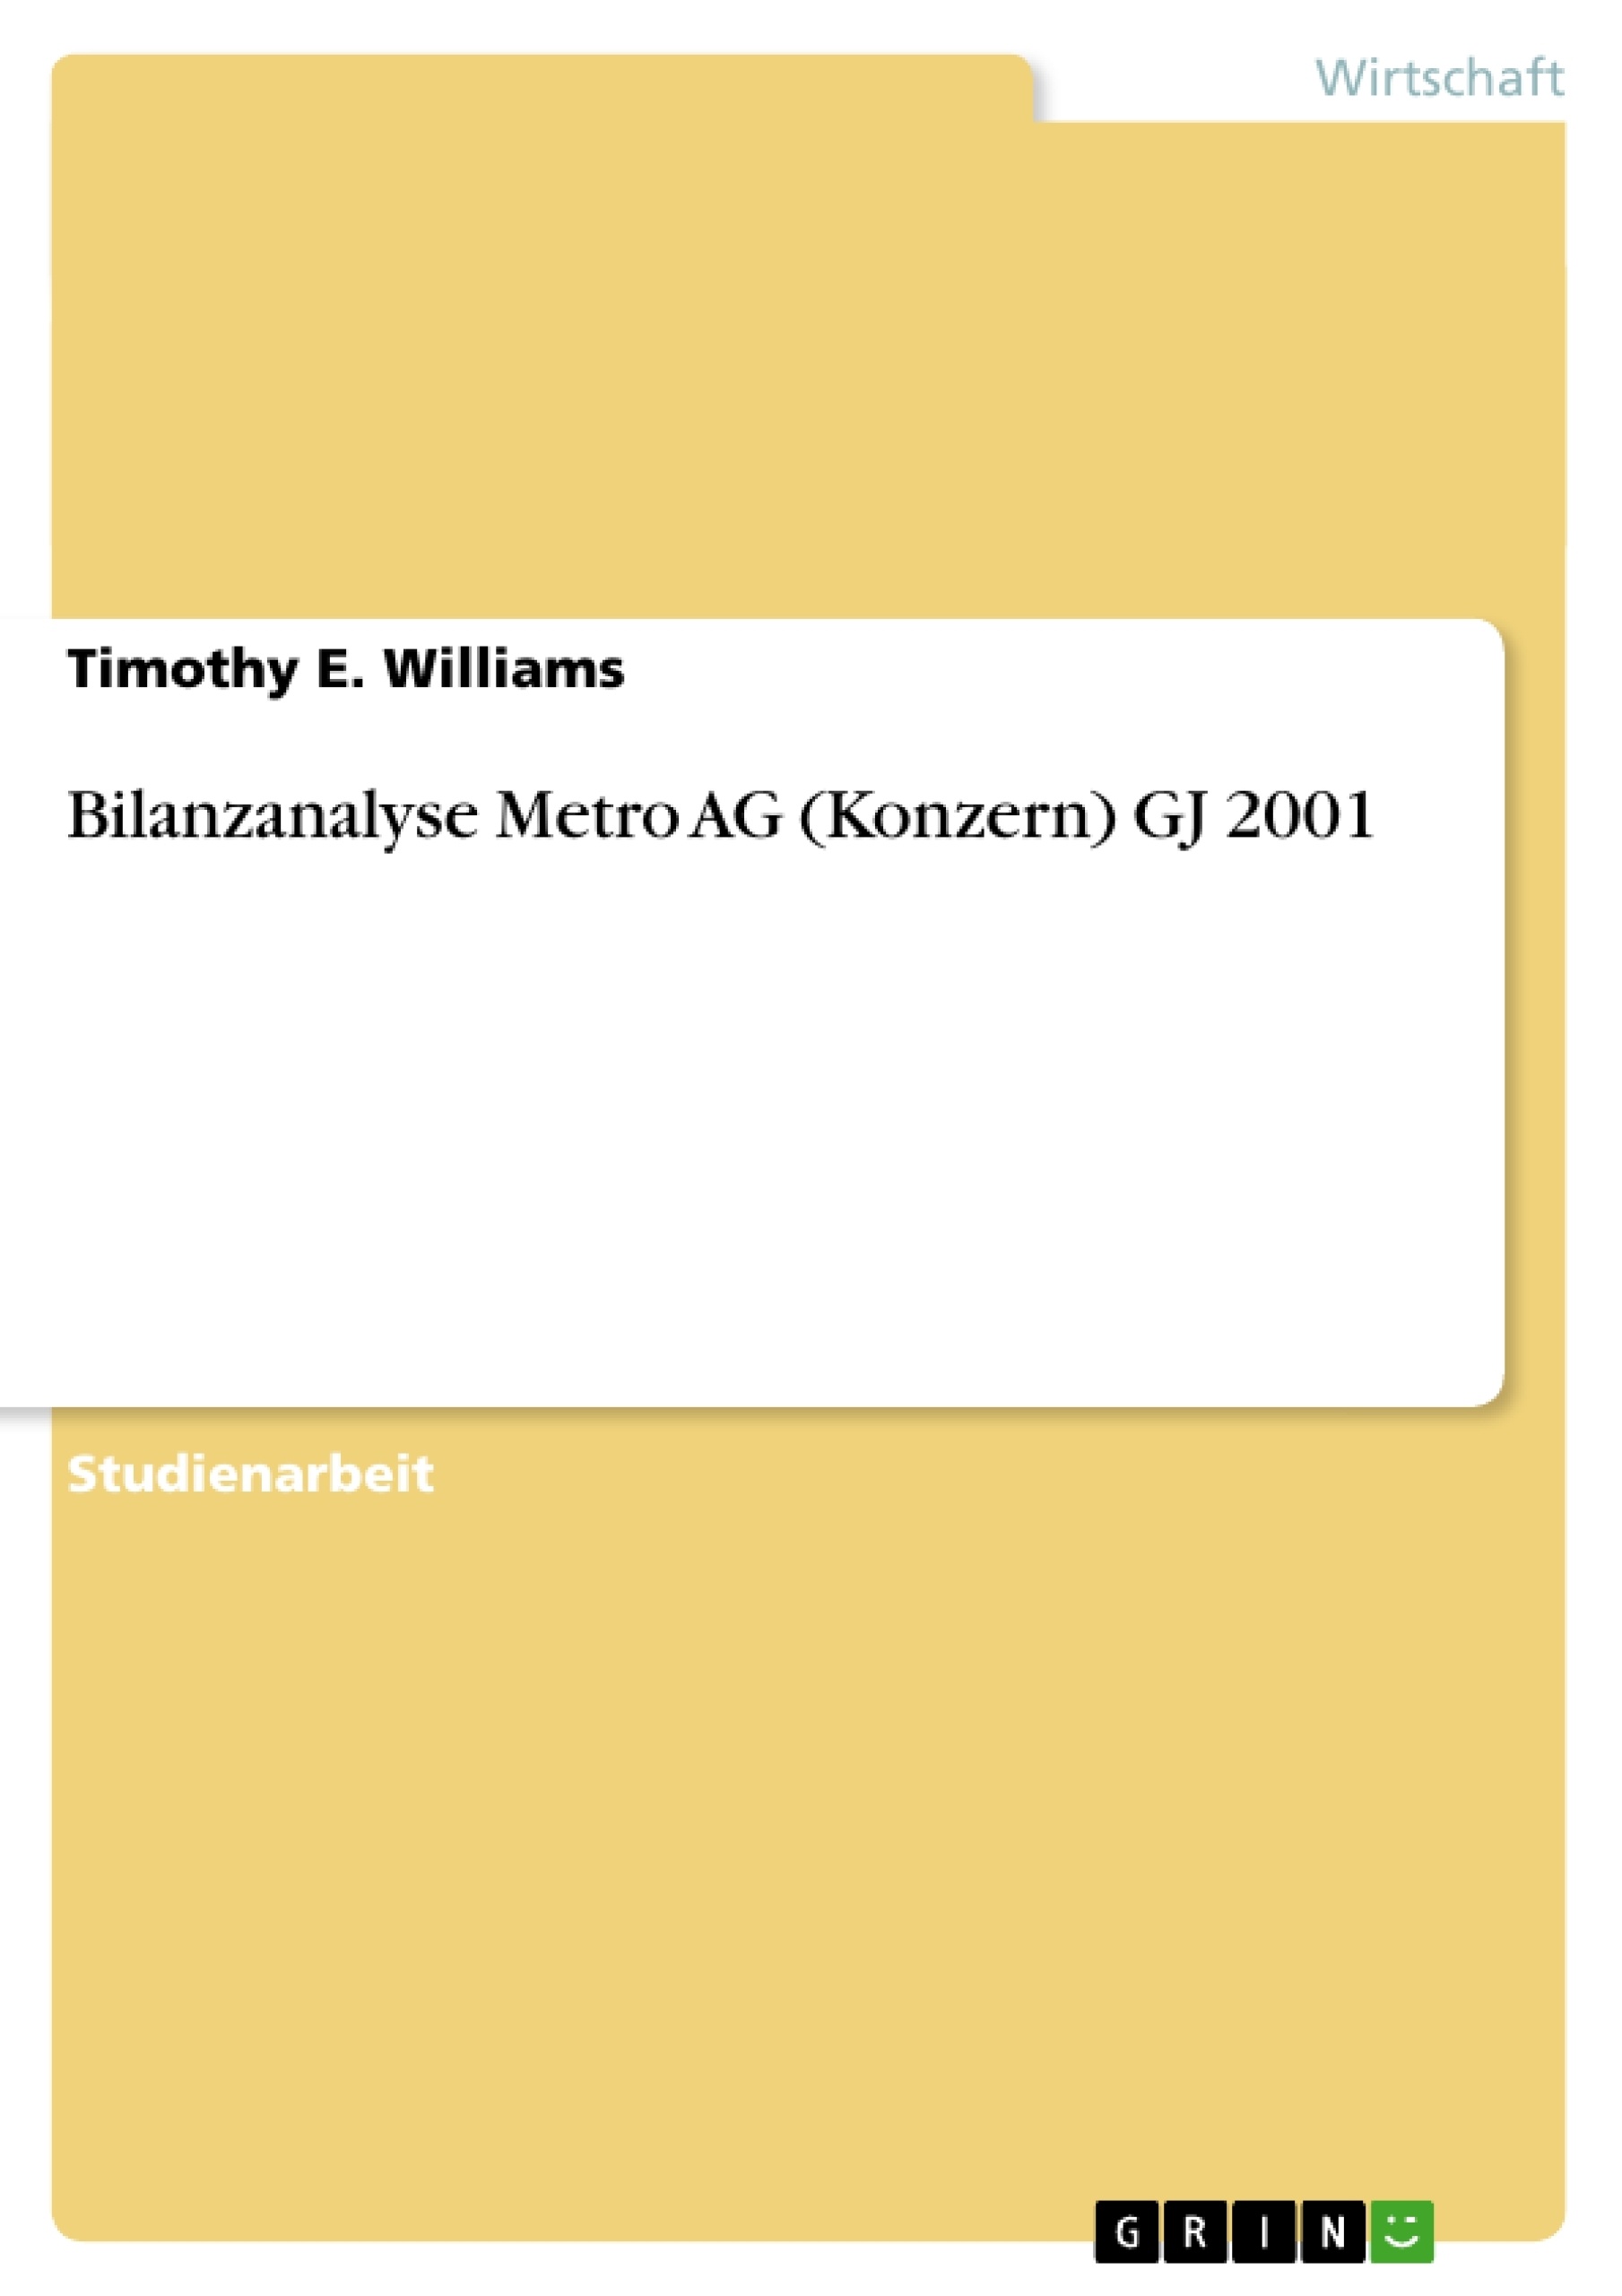 Title: Bilanzanalyse Metro AG (Konzern) GJ 2001